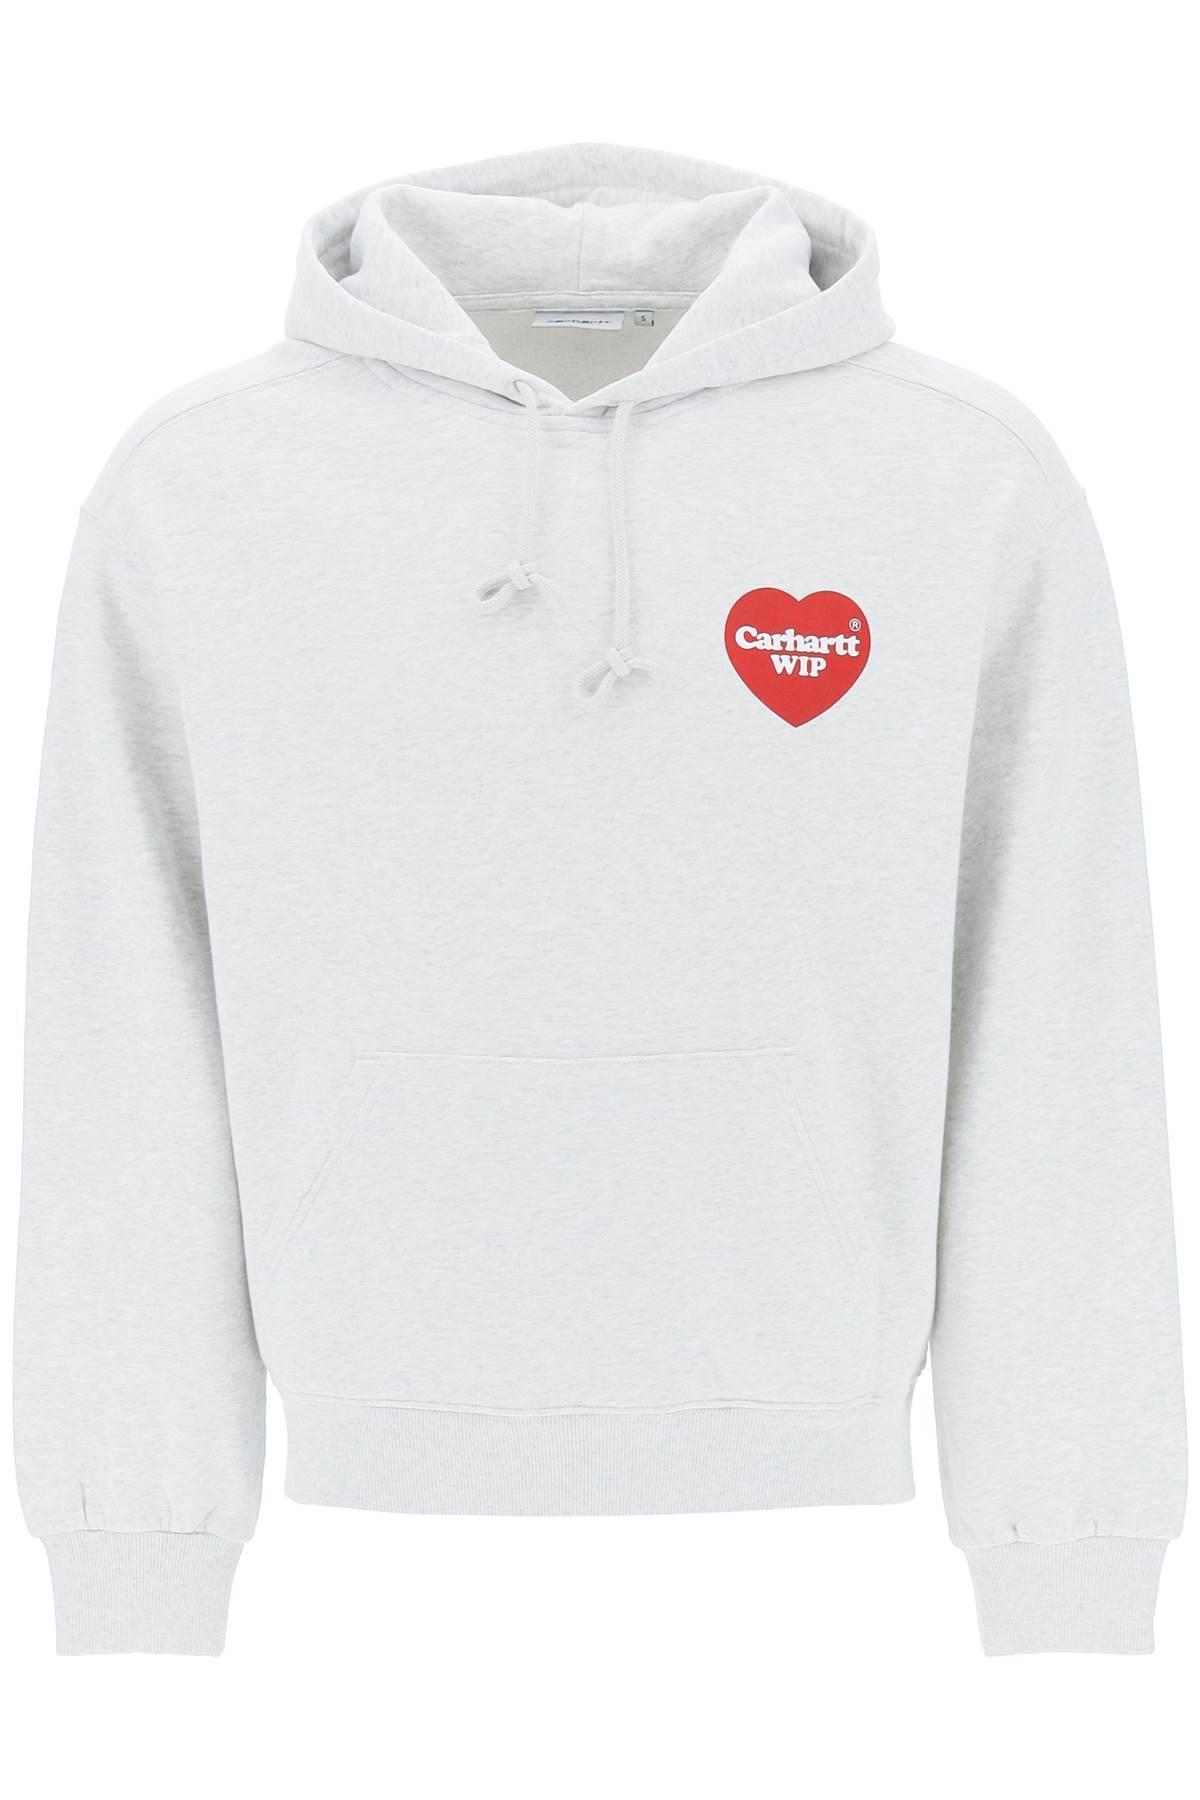 Carhartt WIP Hooded Heart Sweatshirt in White for Men | Lyst